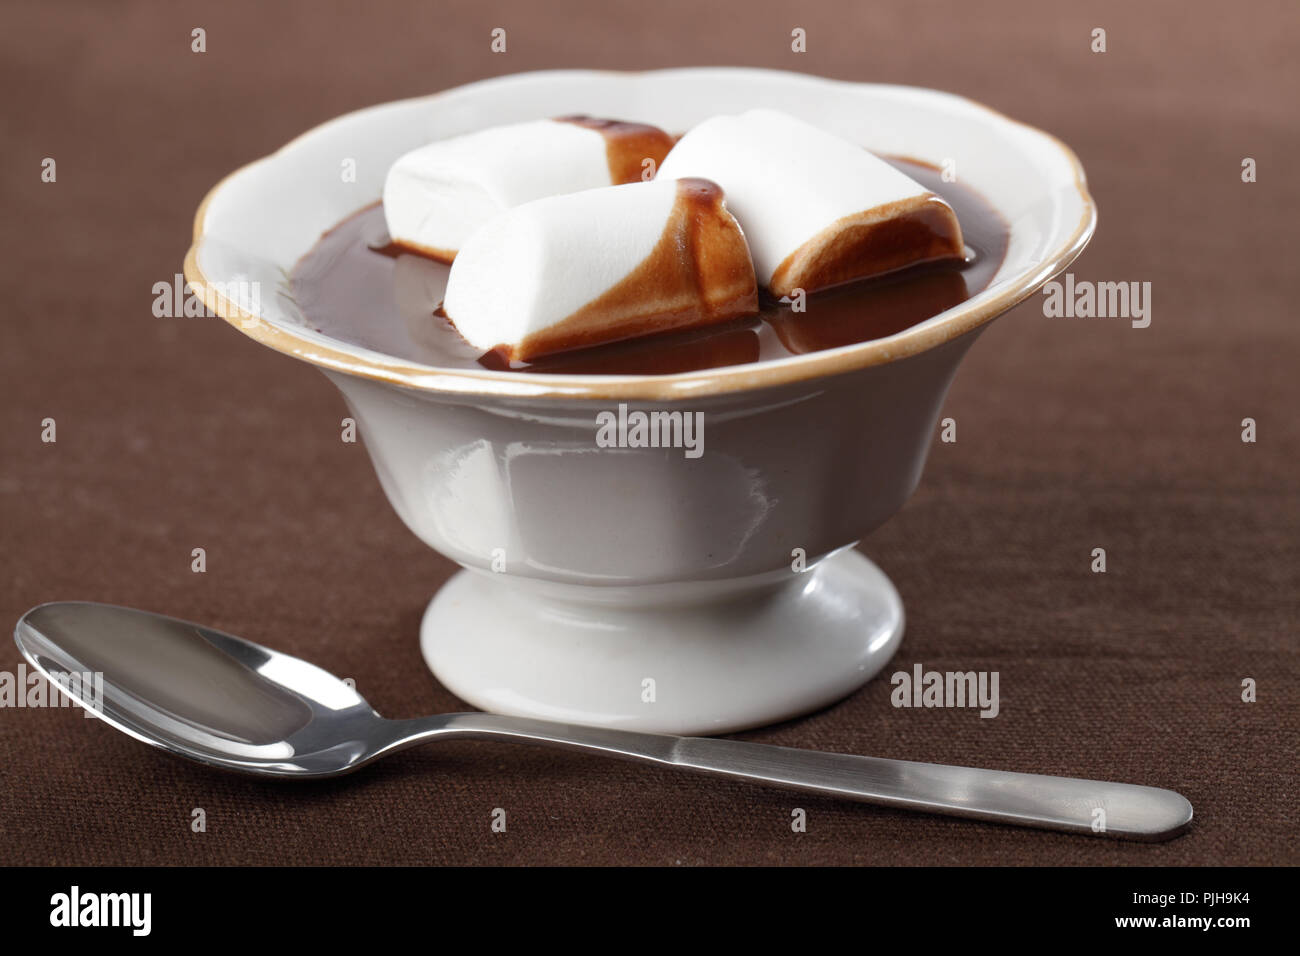 Chocolate caliente con malvavisco blanco en el recipiente Foto de stock